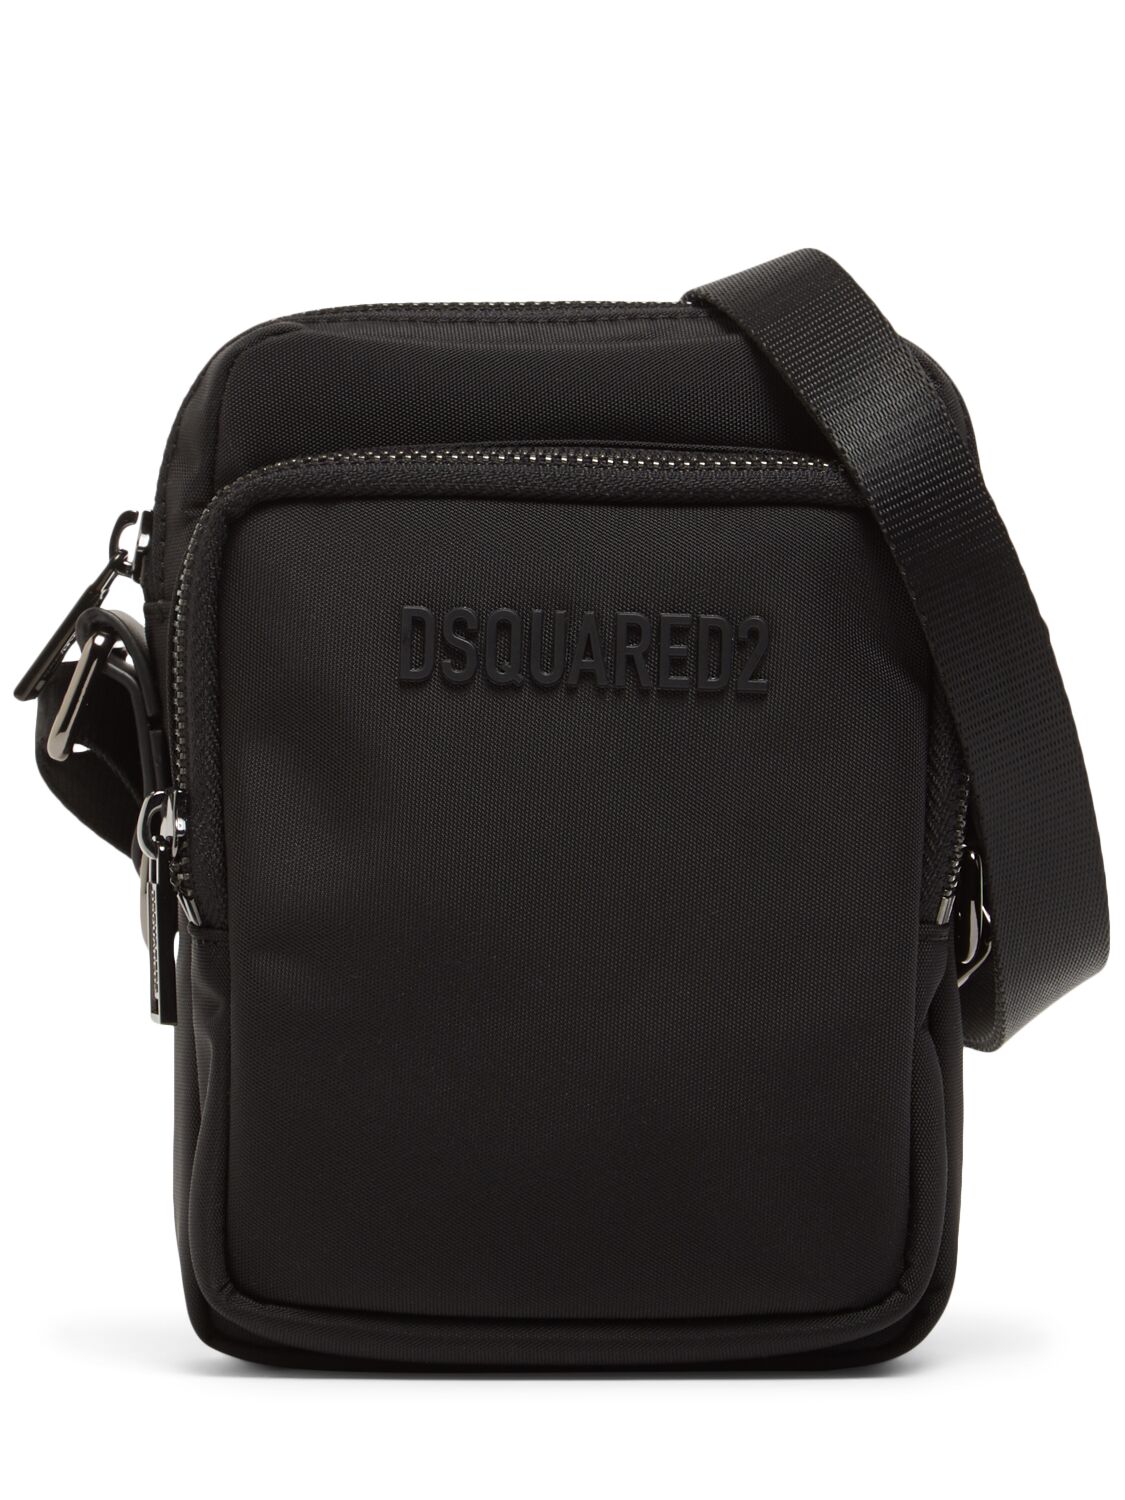 Dsquared2 Logo Cordura Crossbody Bag In Black